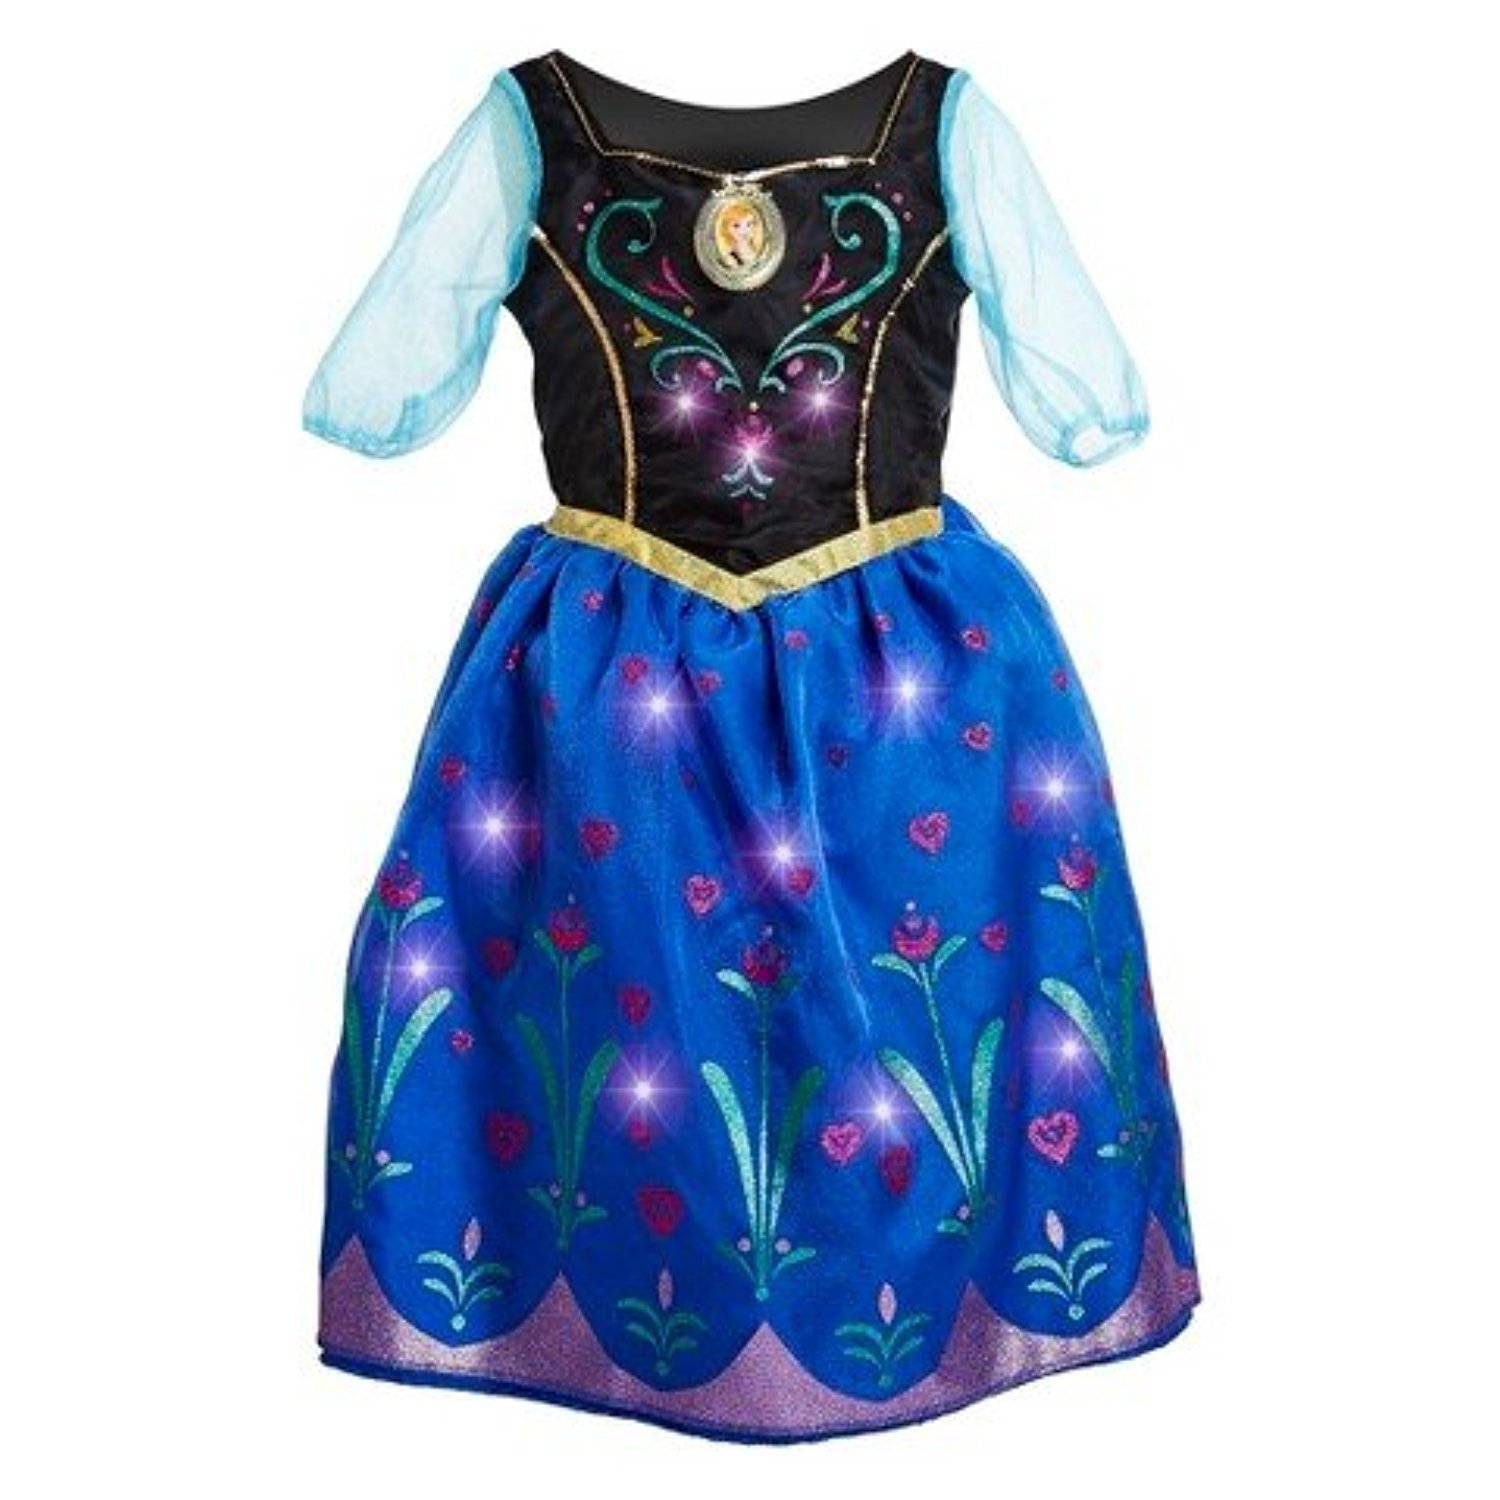 Disney Frozen Anna Musical Light-Up Dress Size 7/8, Black